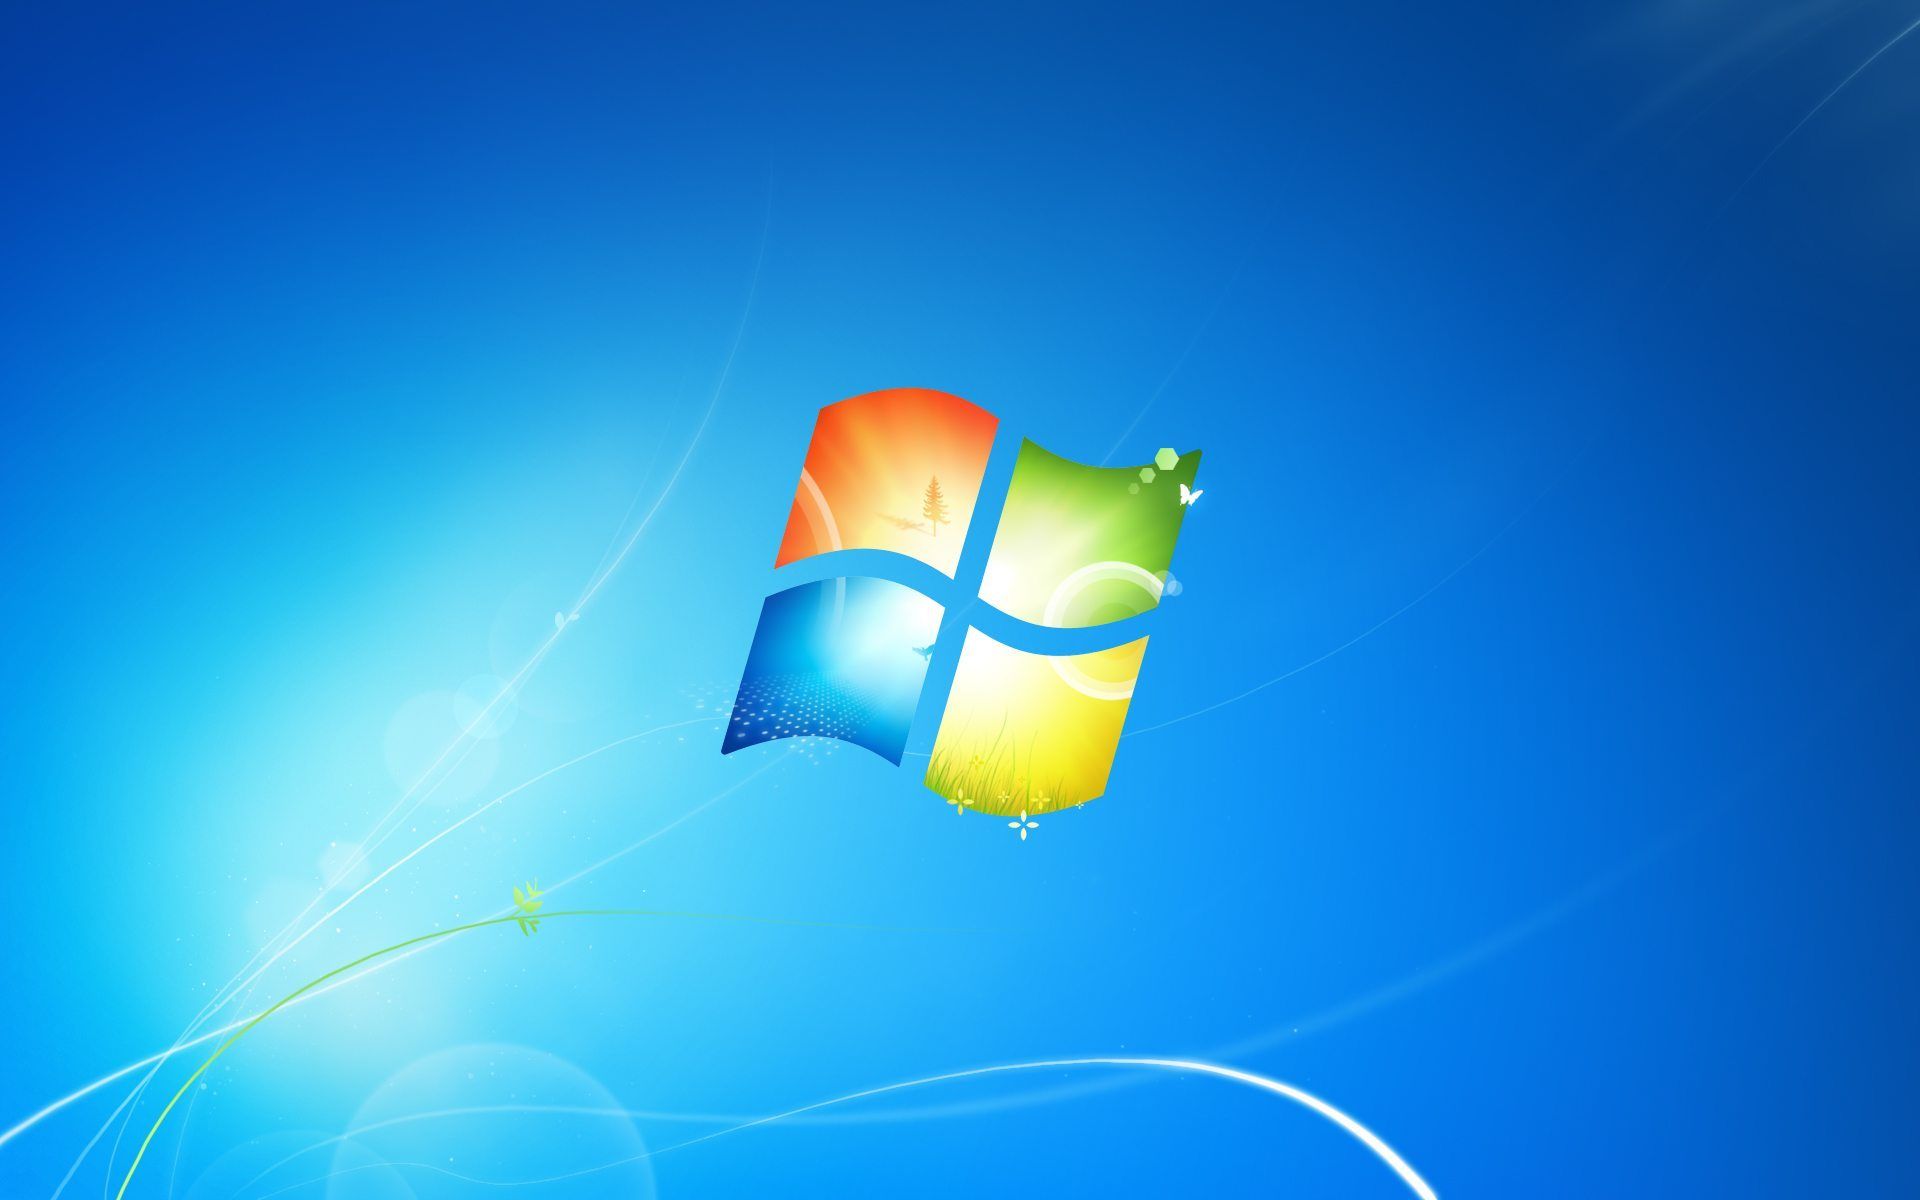 Với Wallpaper Windows 7, bạn sẽ được trải nghiệm một không gian làm việc đầy tươi mới và năng động. Với nhiều lựa chọn thiết kế độc đáo và sắc nét, bạn chắc chắn sẽ tìm được hình nền ưng ý và phù hợp với tính cách của mình. Hãy cùng trải nghiệm ngay wallpaper Windows 7 và tìm kiếm cảm hứng làm việc mới.